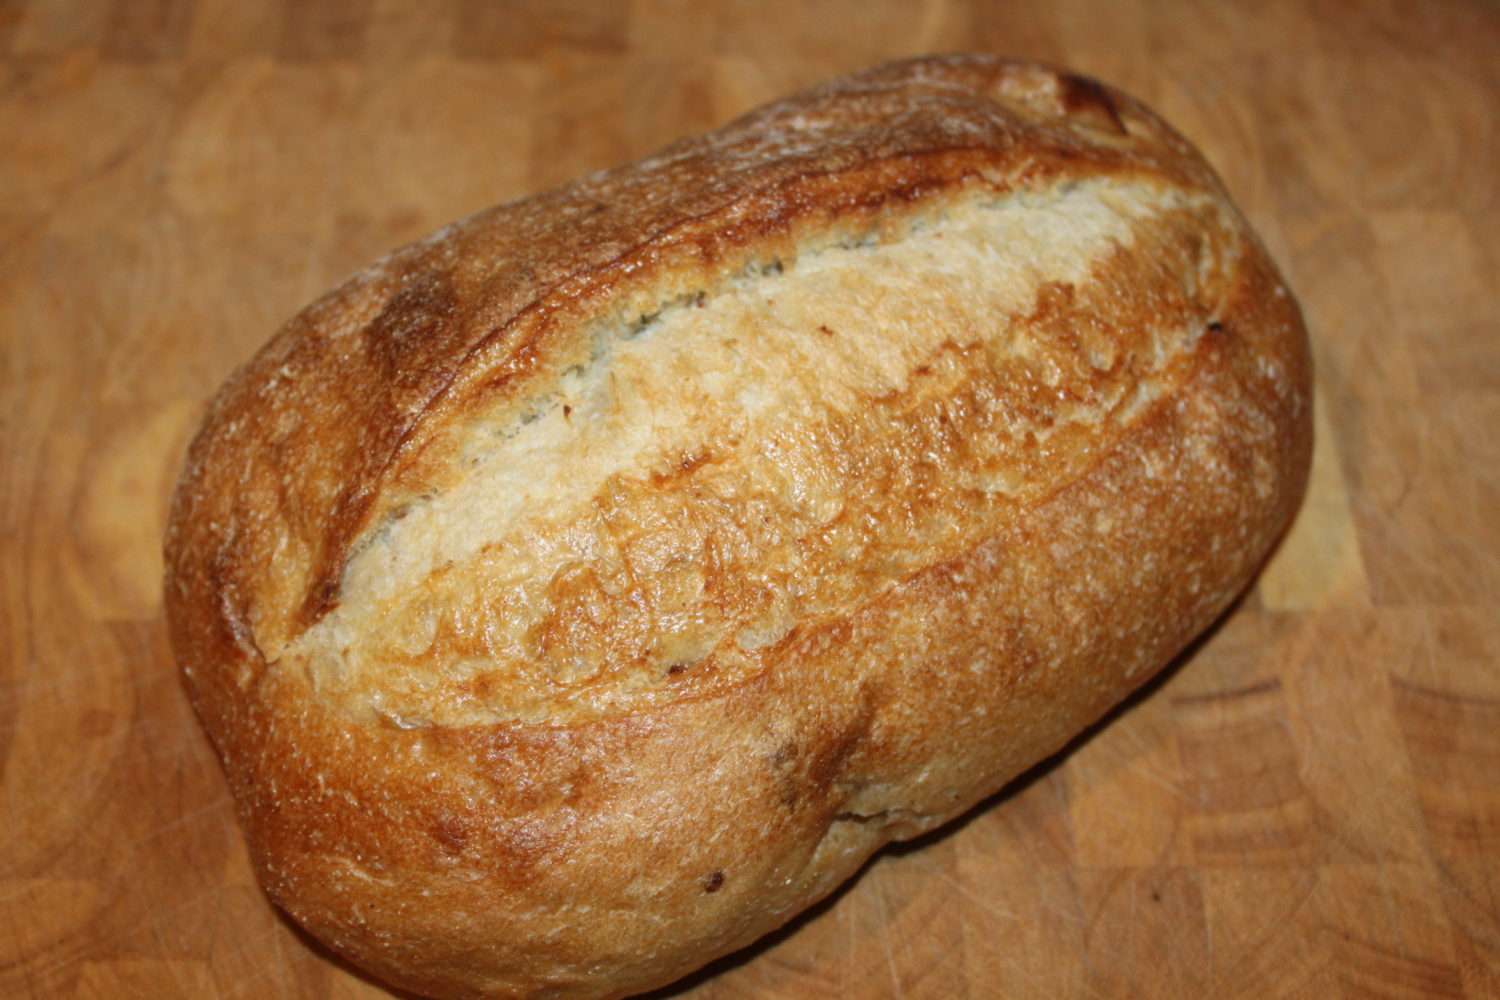 Oven Roasted Garlic Artisan Bread Recipe - Simple, Delicious Flavor!